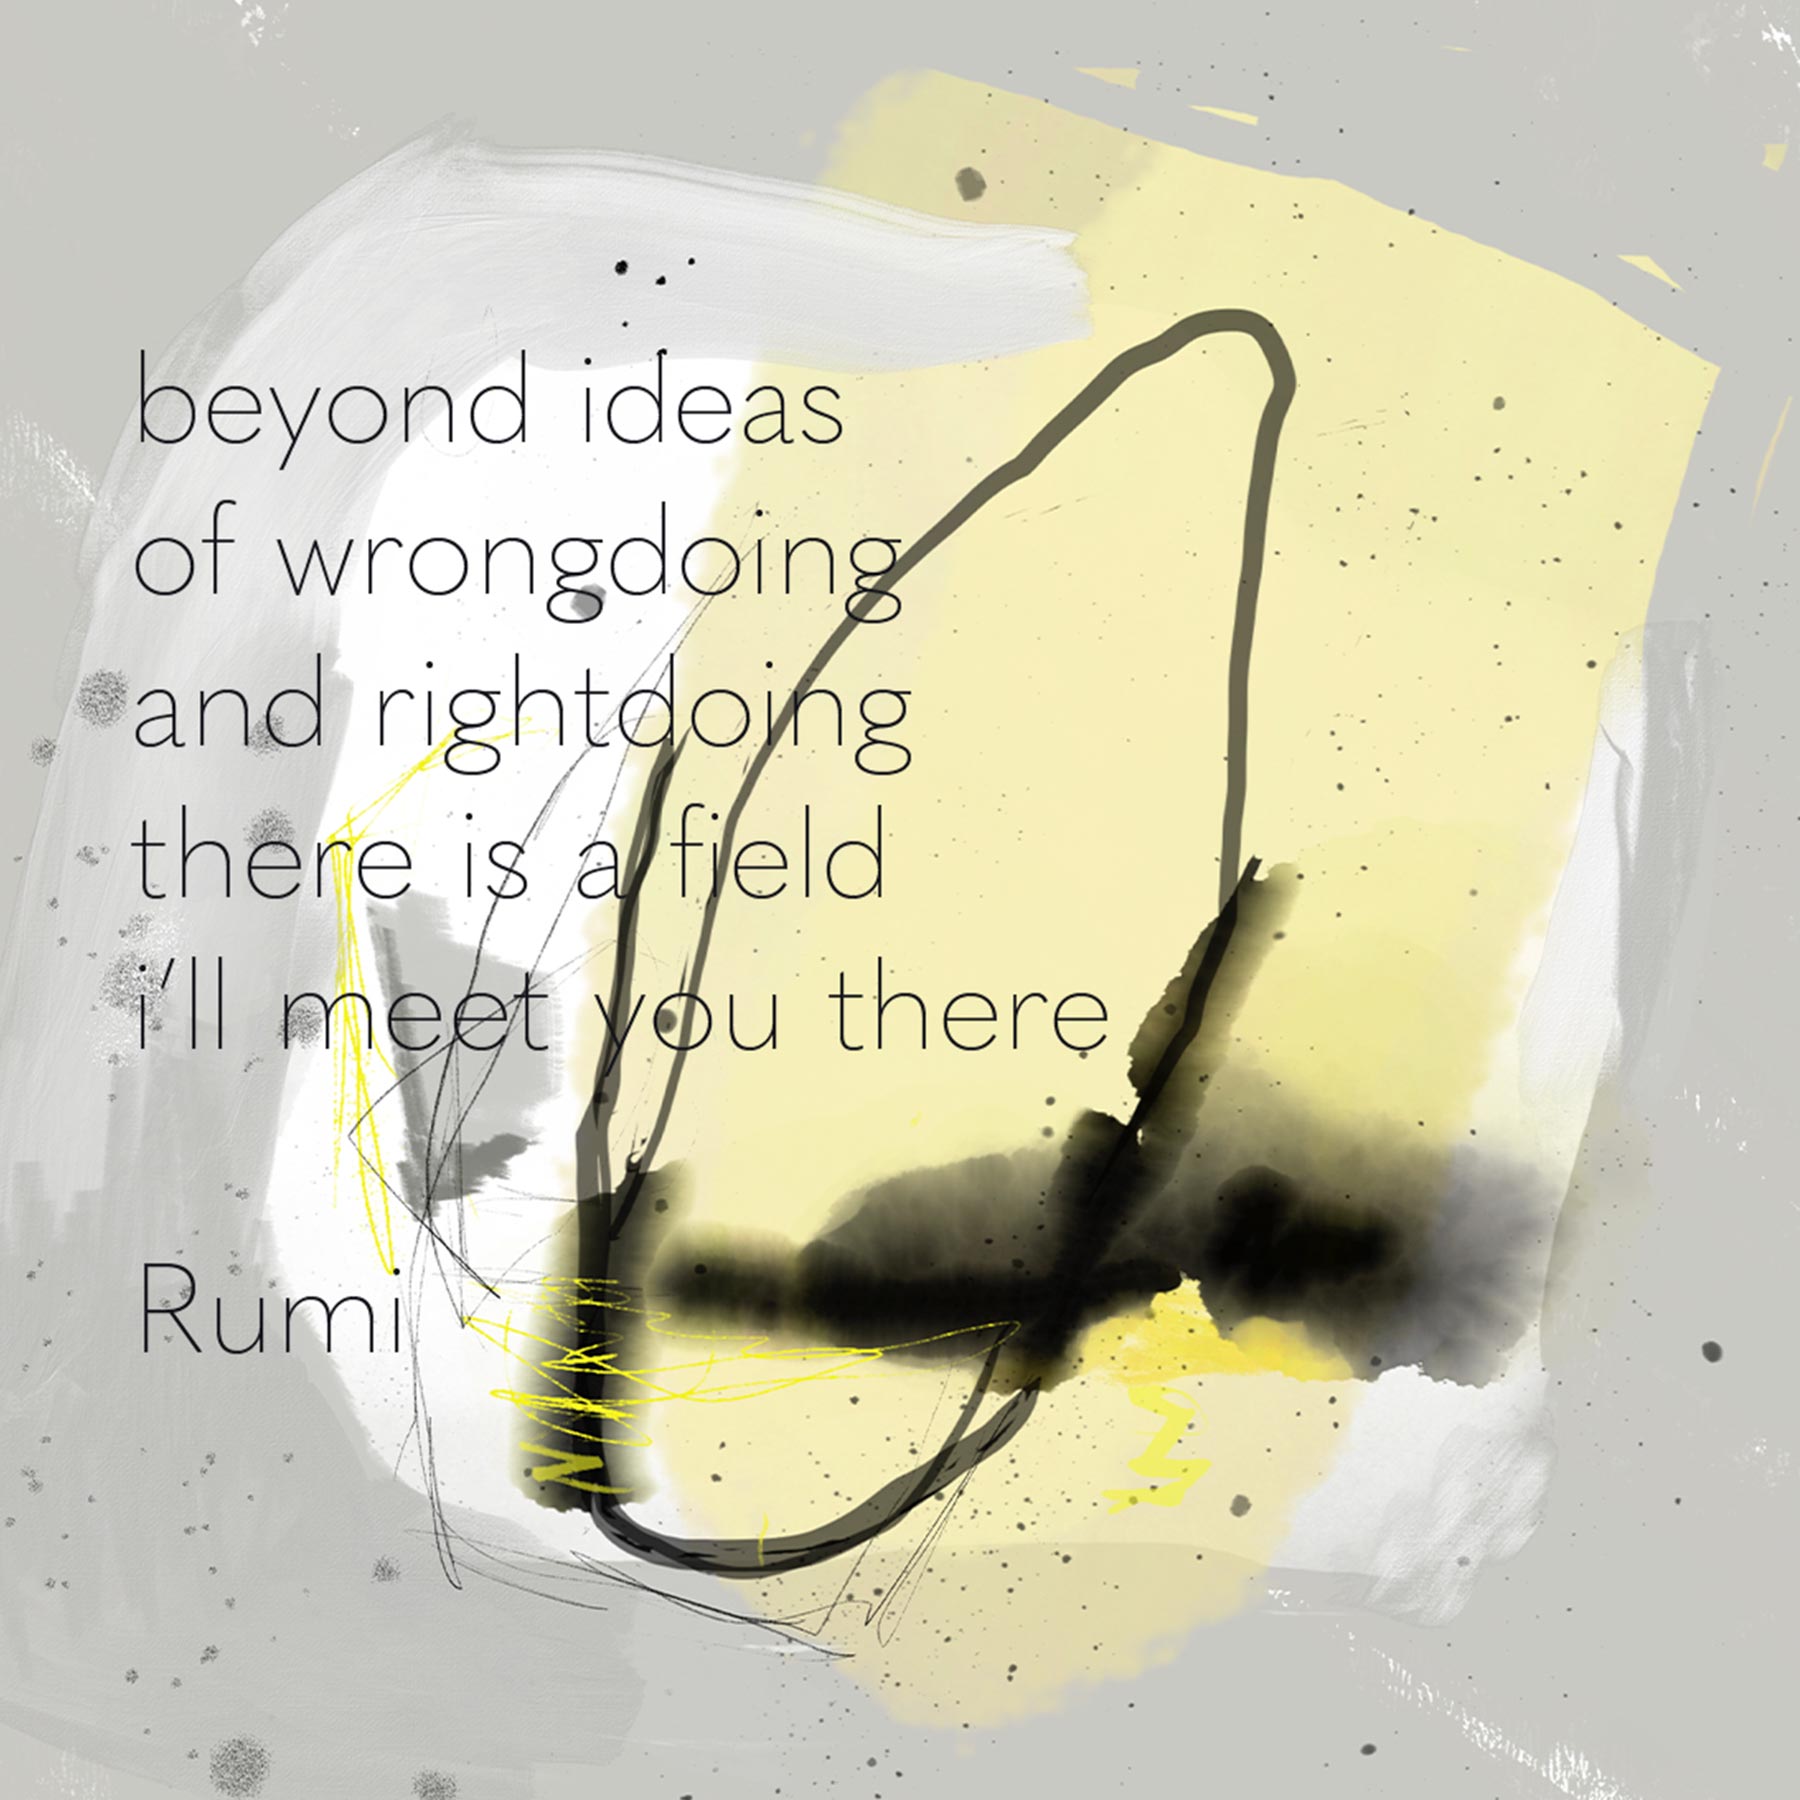 Beyond ideas © Anne-Riet de Boer